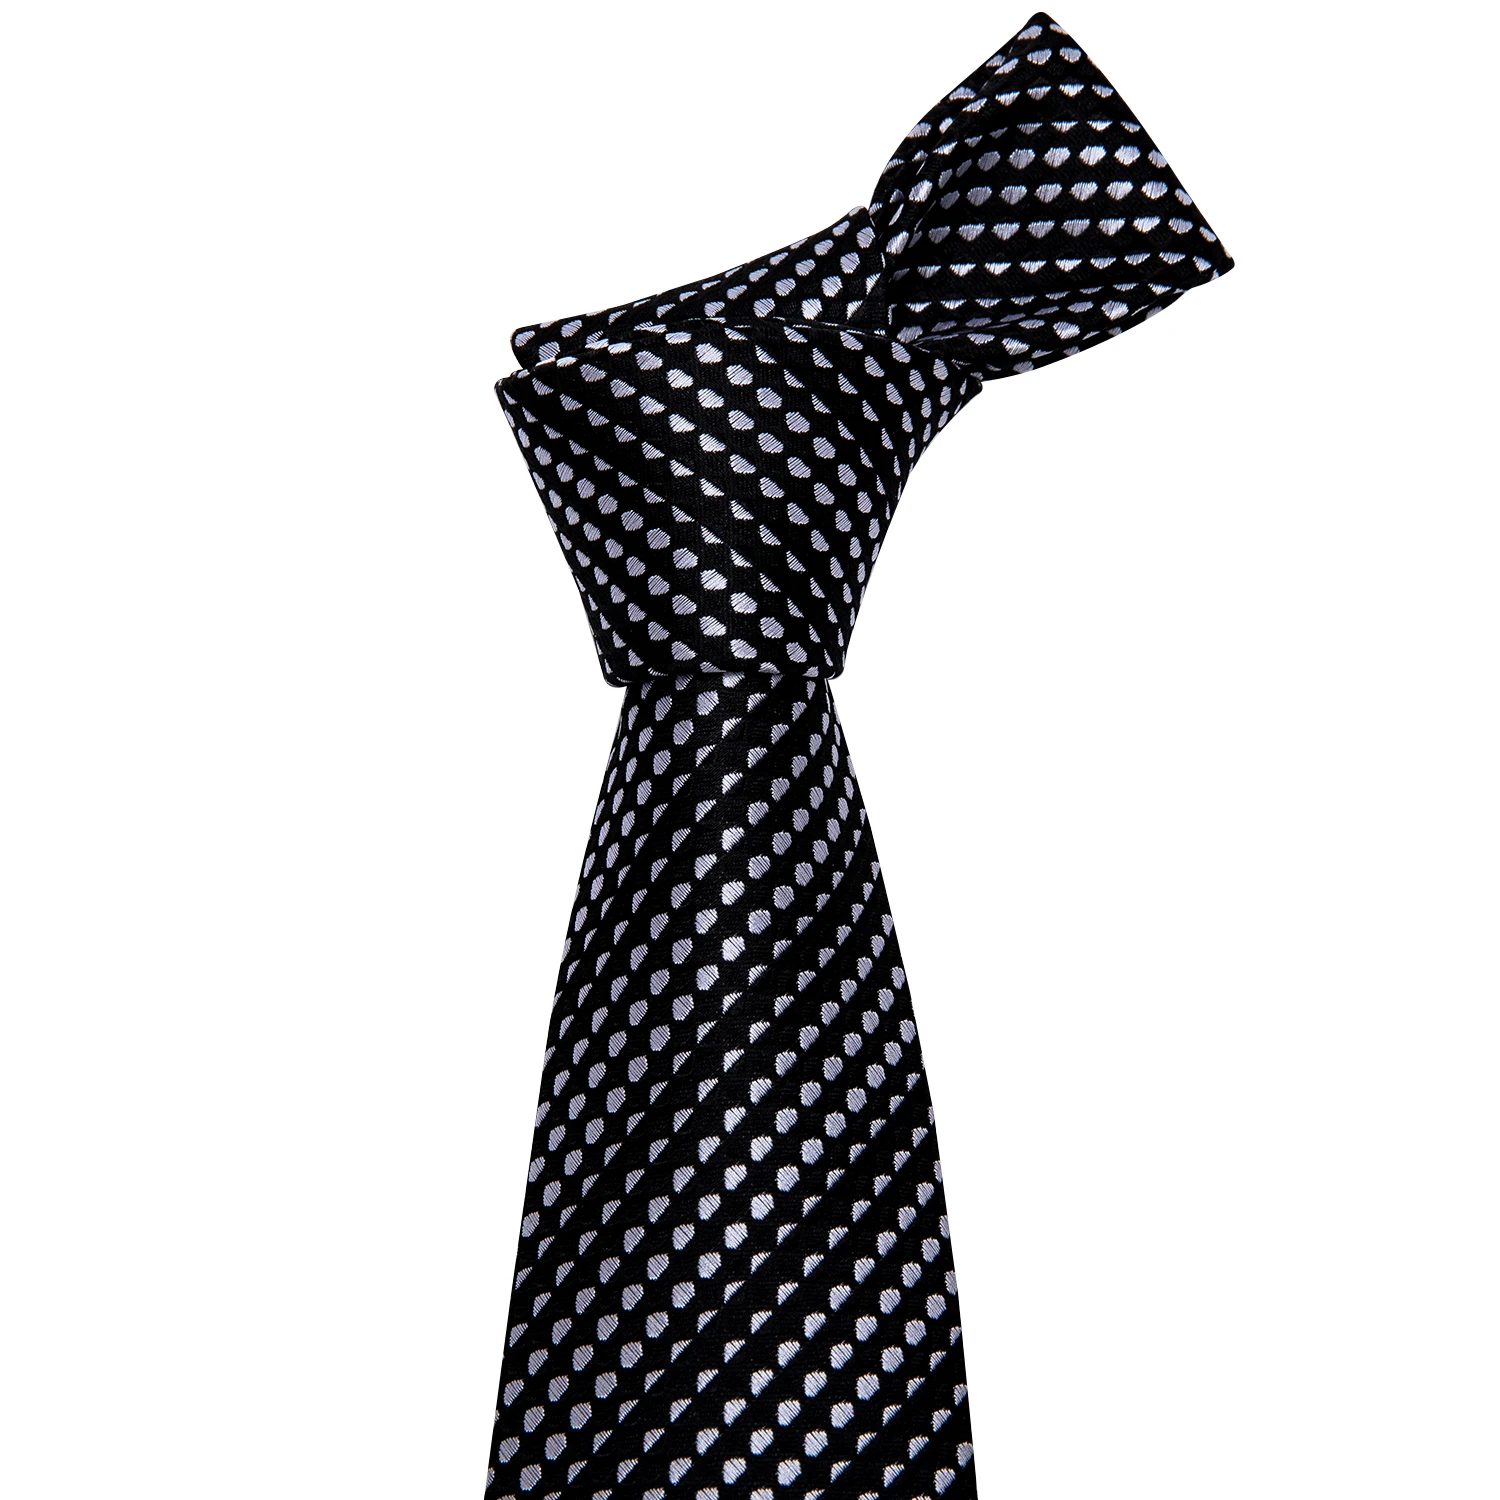 Мужские галстуки в горошек, черный/белый галстук, набор, карманные Квадратные запонки, модный галстук для бизнеса, Свадебный галстук, Барри. Ван FA-5187